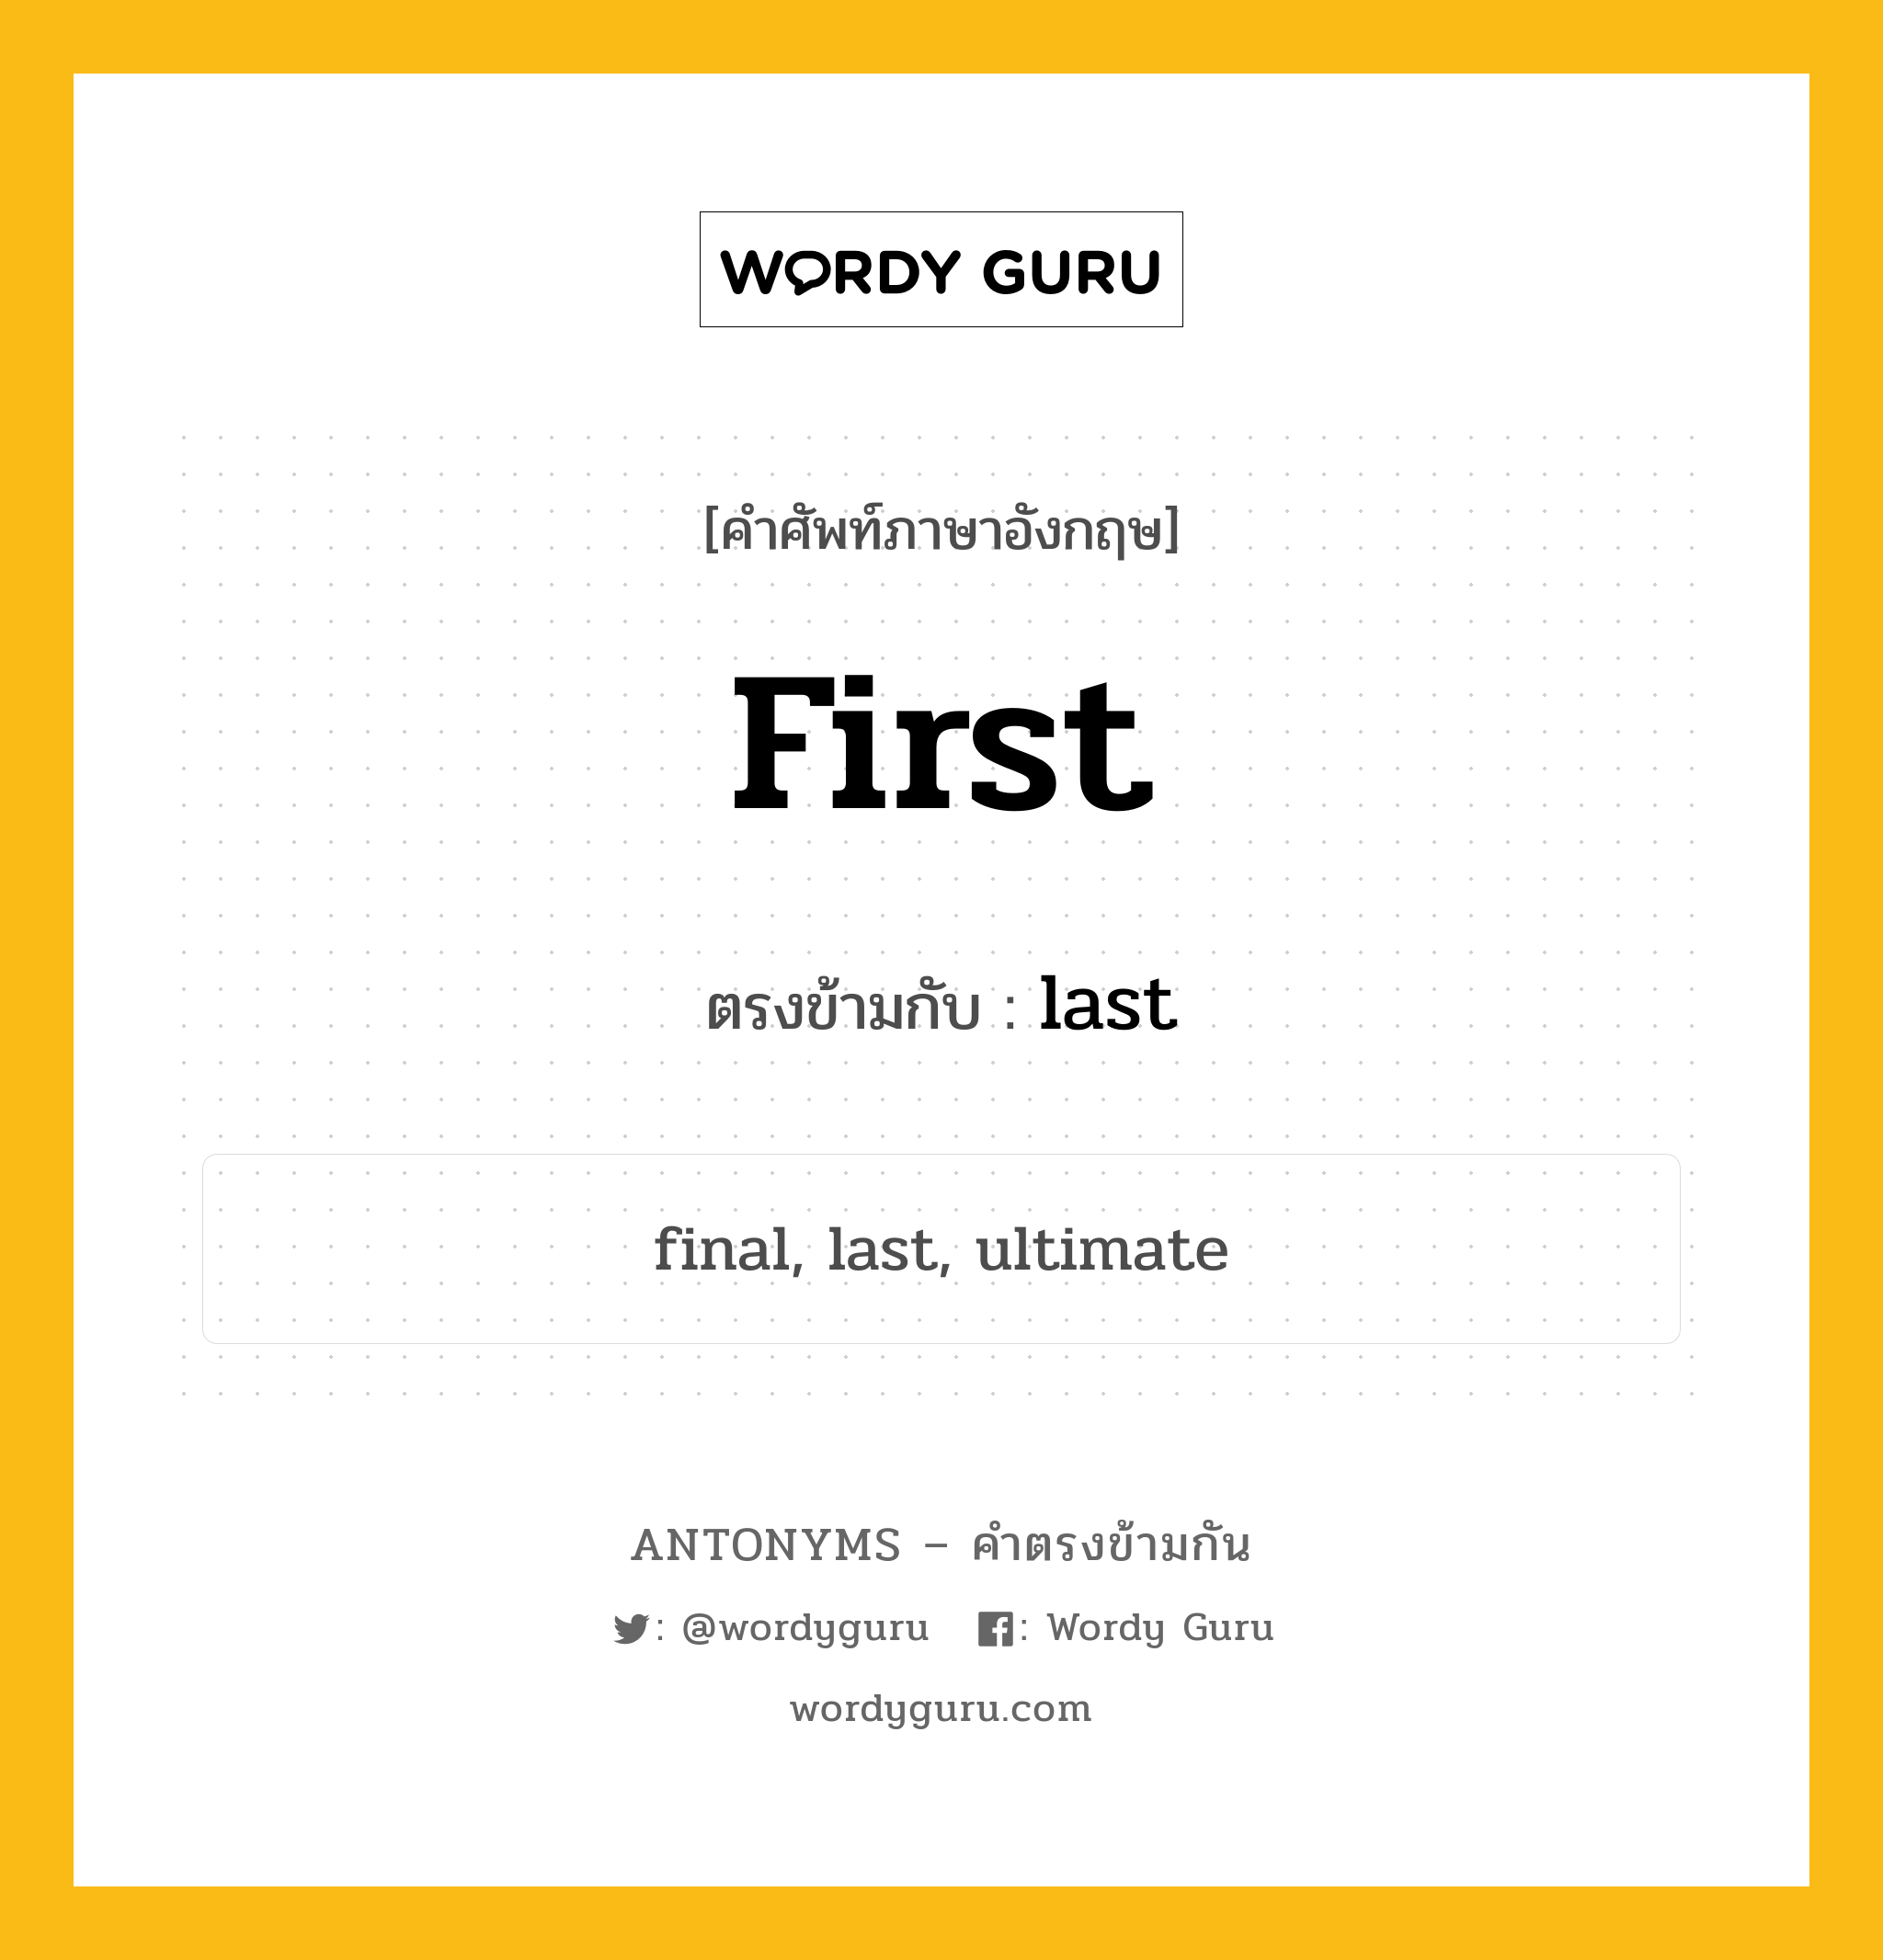 first เป็นคำตรงข้ามกับคำไหนบ้าง?, คำศัพท์ภาษาอังกฤษ first ตรงข้ามกับ last หมวด last